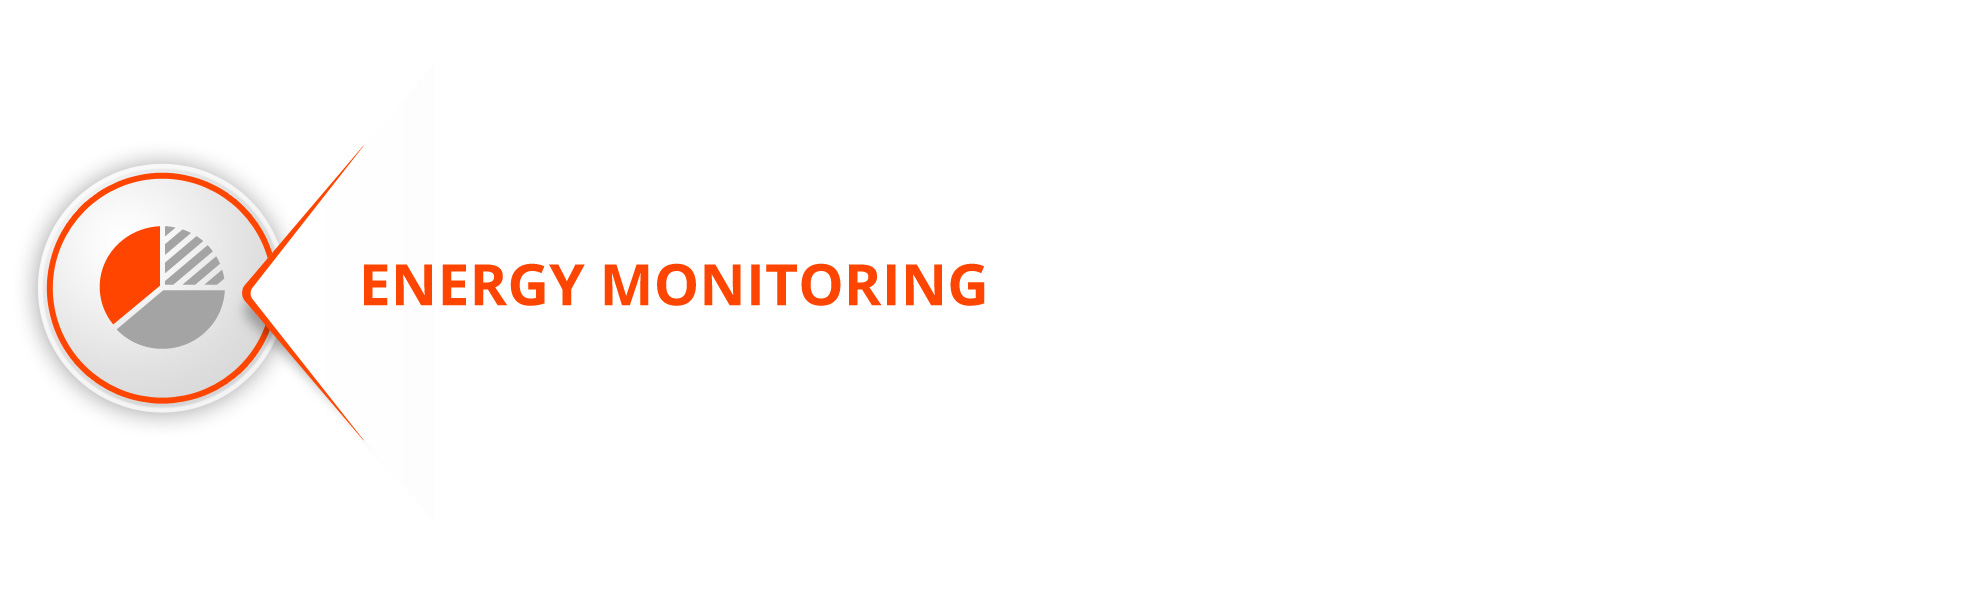 energy-monitoring-azobit